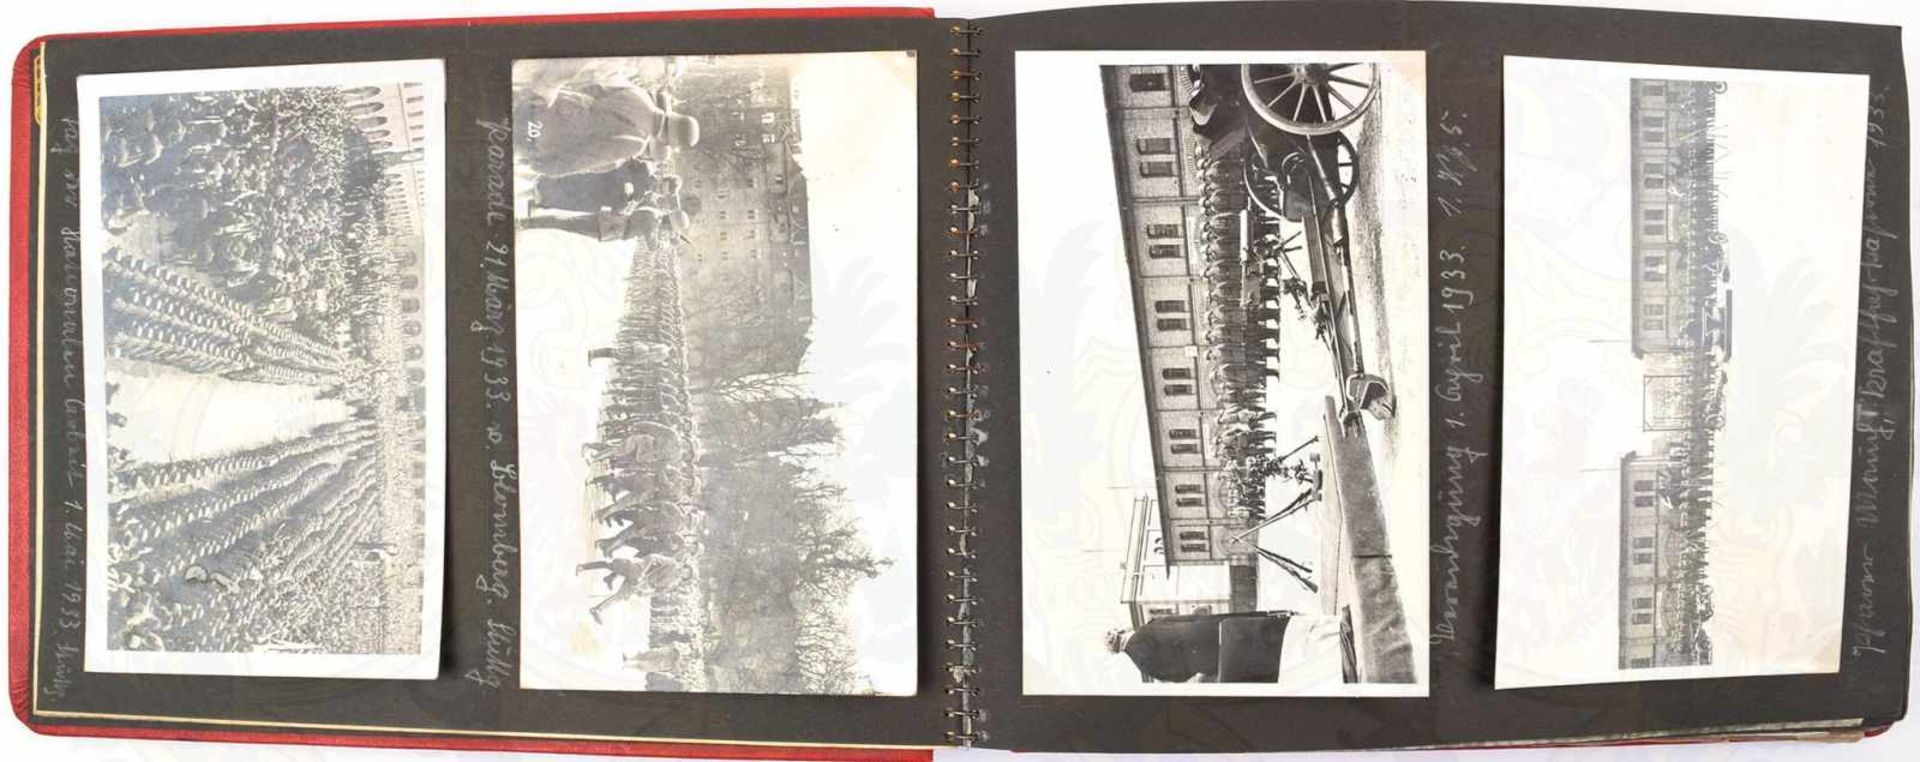 FOTOALBUM DEUTSCHES TURNFEST STUTTGART 1933, m. 137 Fotos u. AK, Parade Wehrmacht Stuttgart, IR 15 - Bild 2 aus 3